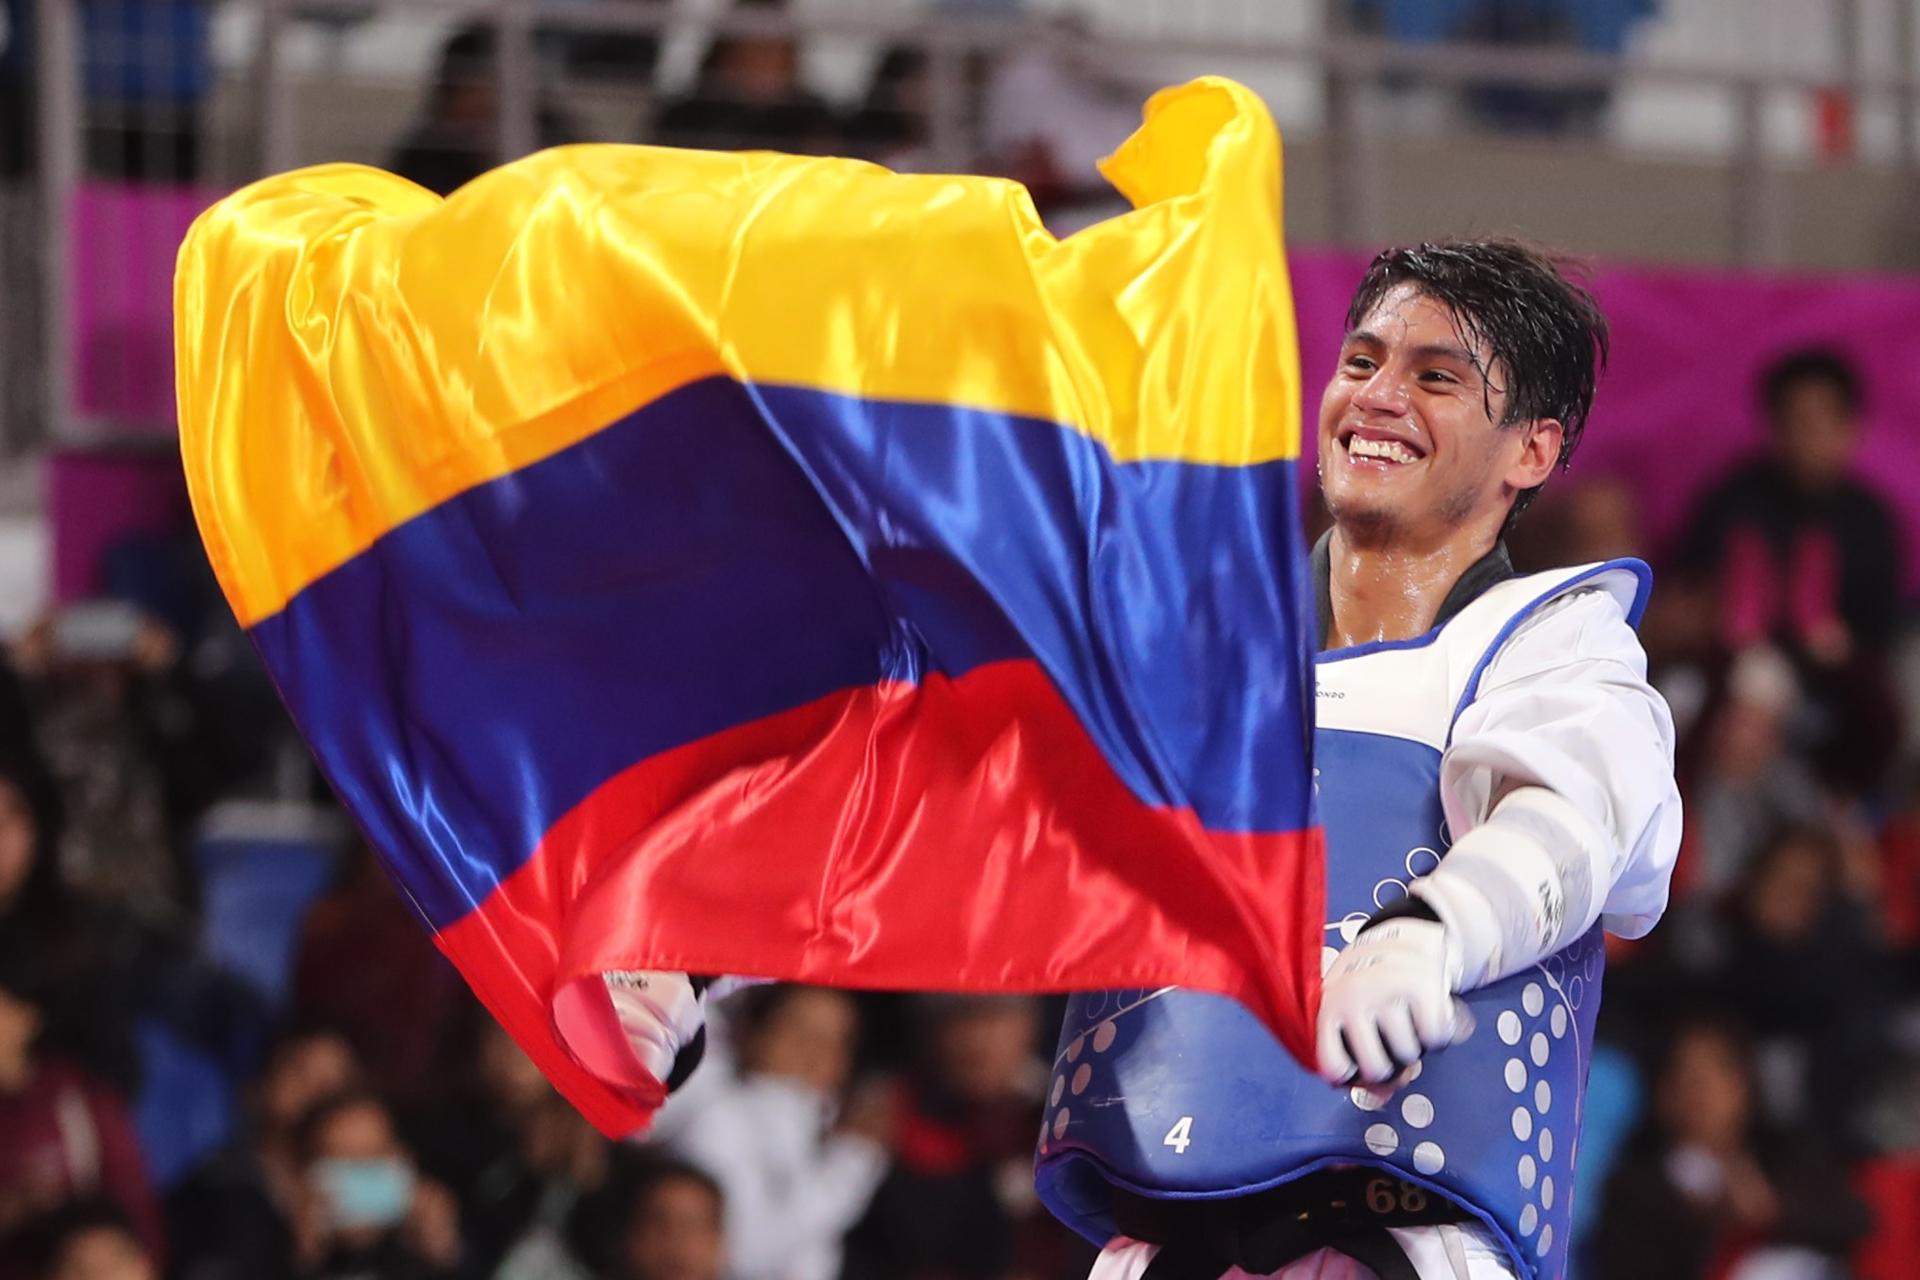 Fotografía de archivo en la que se registró al taekwondista colombiano Miguel Ángel Trejos, al ondear una bandera de su país durante los Juegos Panamericanos 2019, en Lima (Perú). EFE/Martín Alipaz